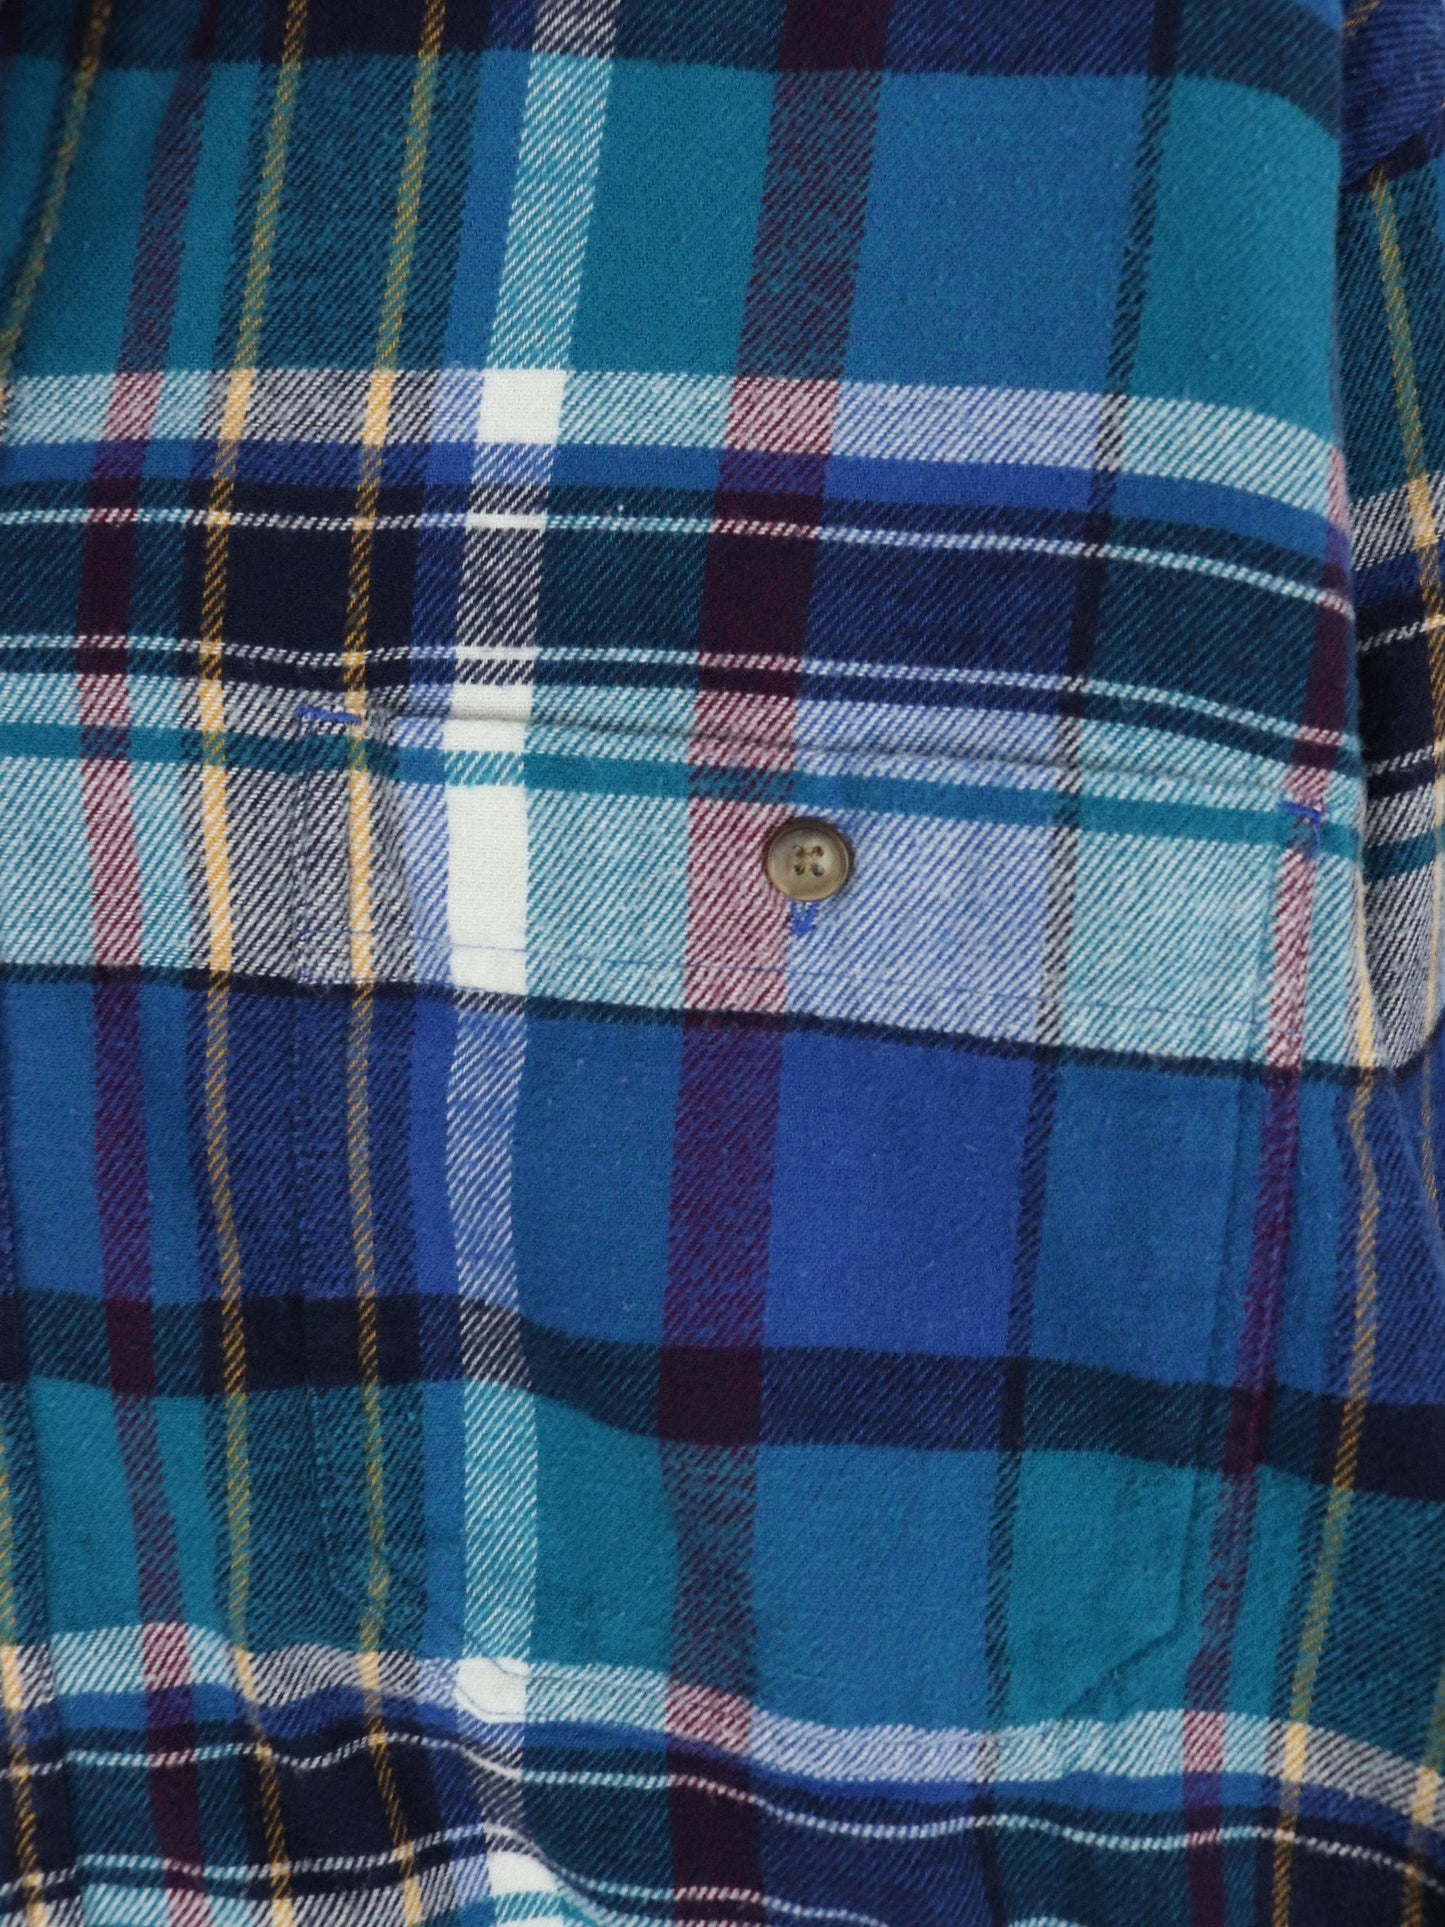 Eddie Bauer Button Up Shirts Vintage Eddie Bauer Shirt Mens Medium Blue Flannel Button Up Outdoors